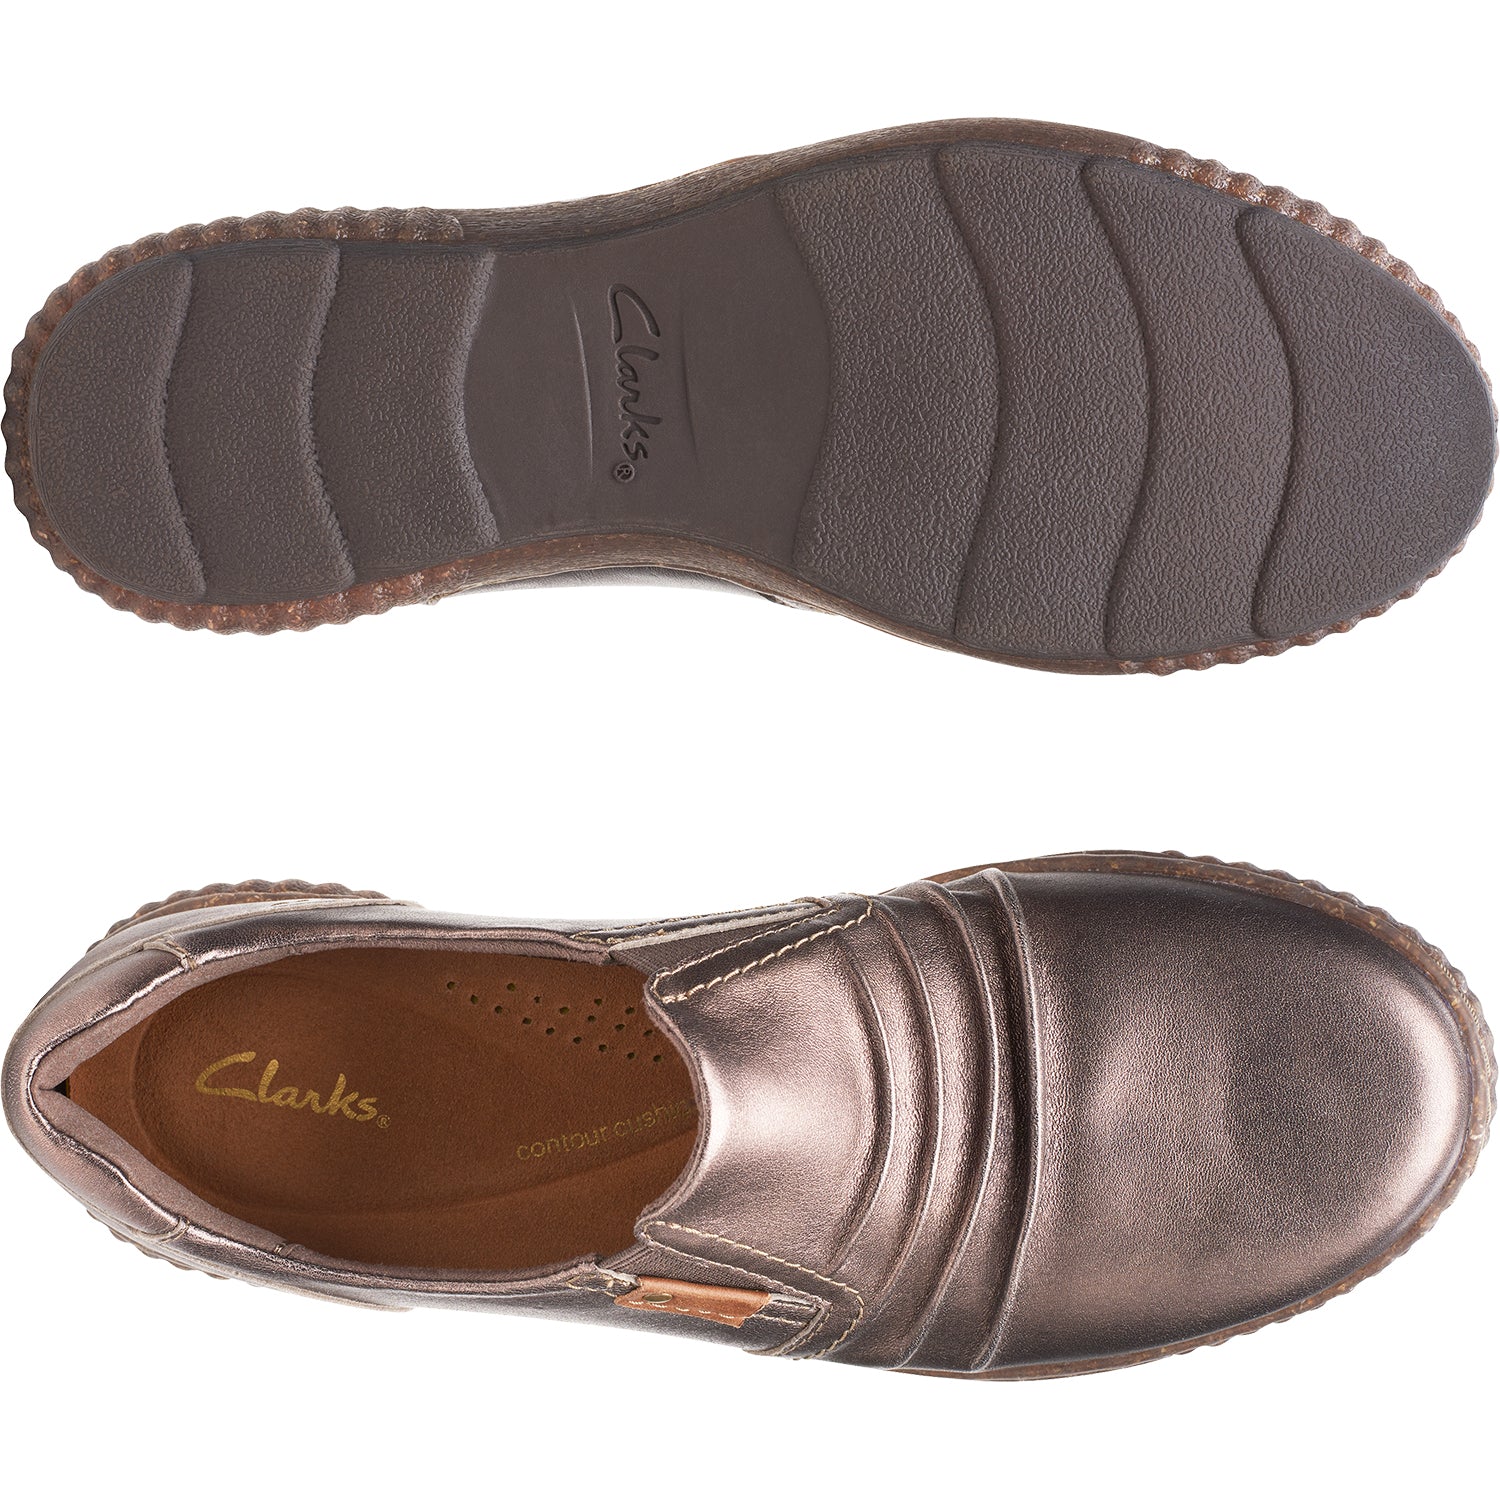 Clarks Magnolia Faye Bronze | Women's Slip-On Shoes | Footwear etc.